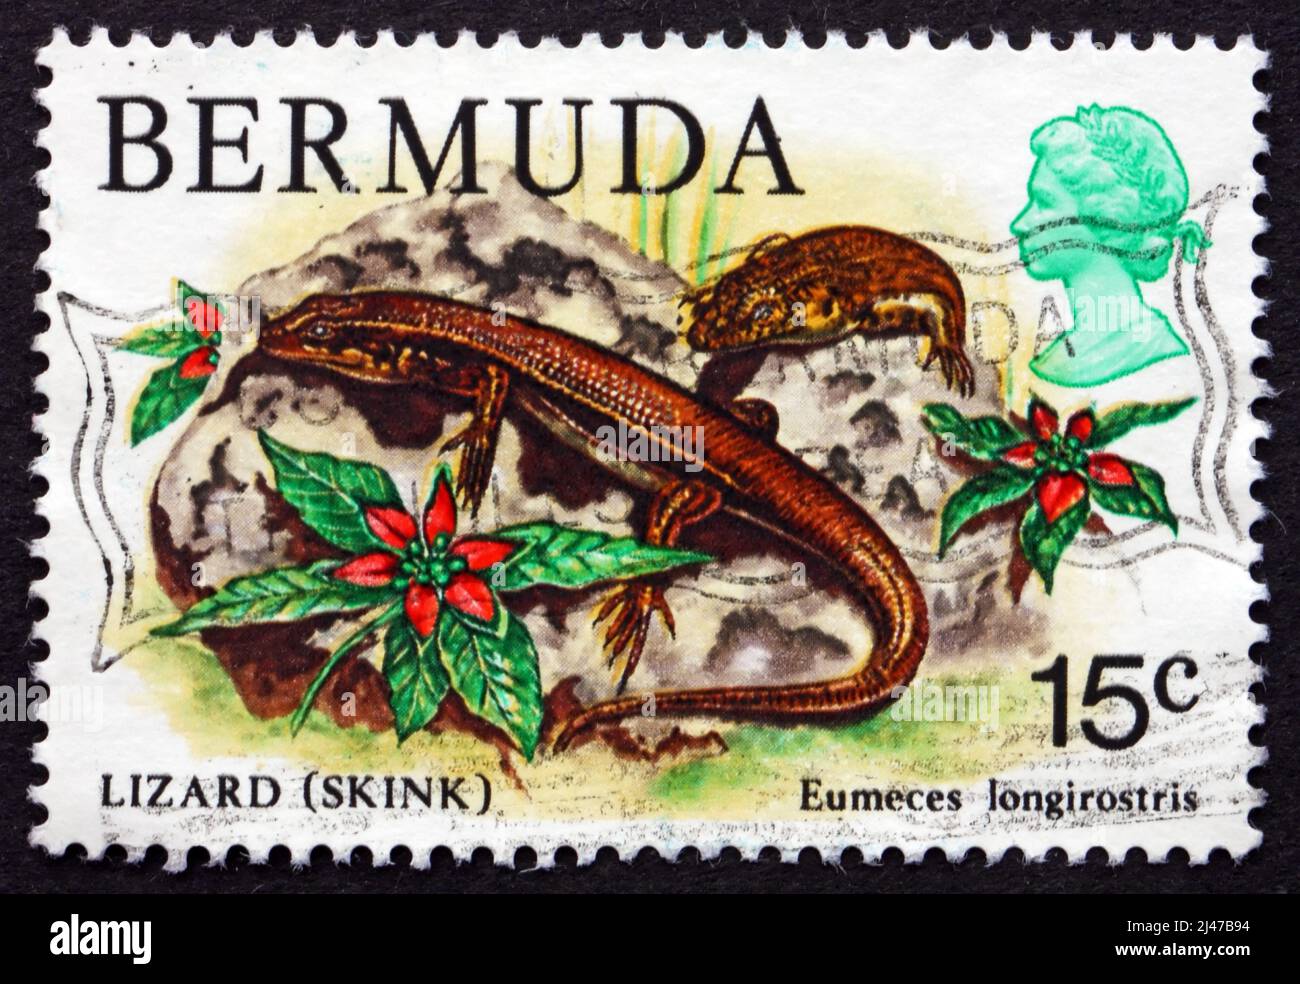 BERMUDA - CIRCA 1979: Un francobollo stampato nelle Bermuda mostra Bermuda Skink, Rock Lizard, Eumeces longirostris, Reptile, circa 1979 Foto Stock